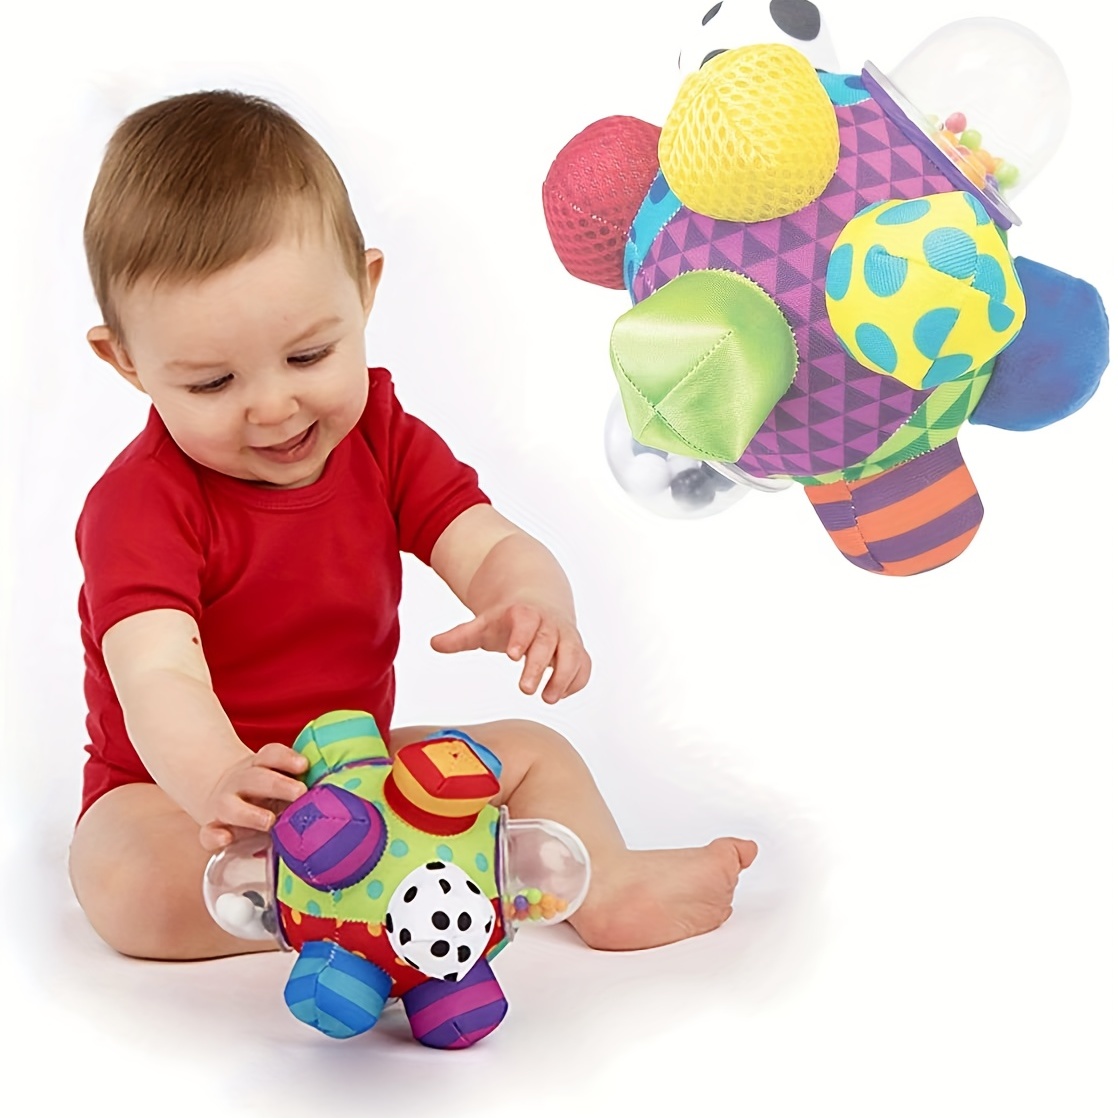 Juegos y juguetes para bebes de 0-6 meses 